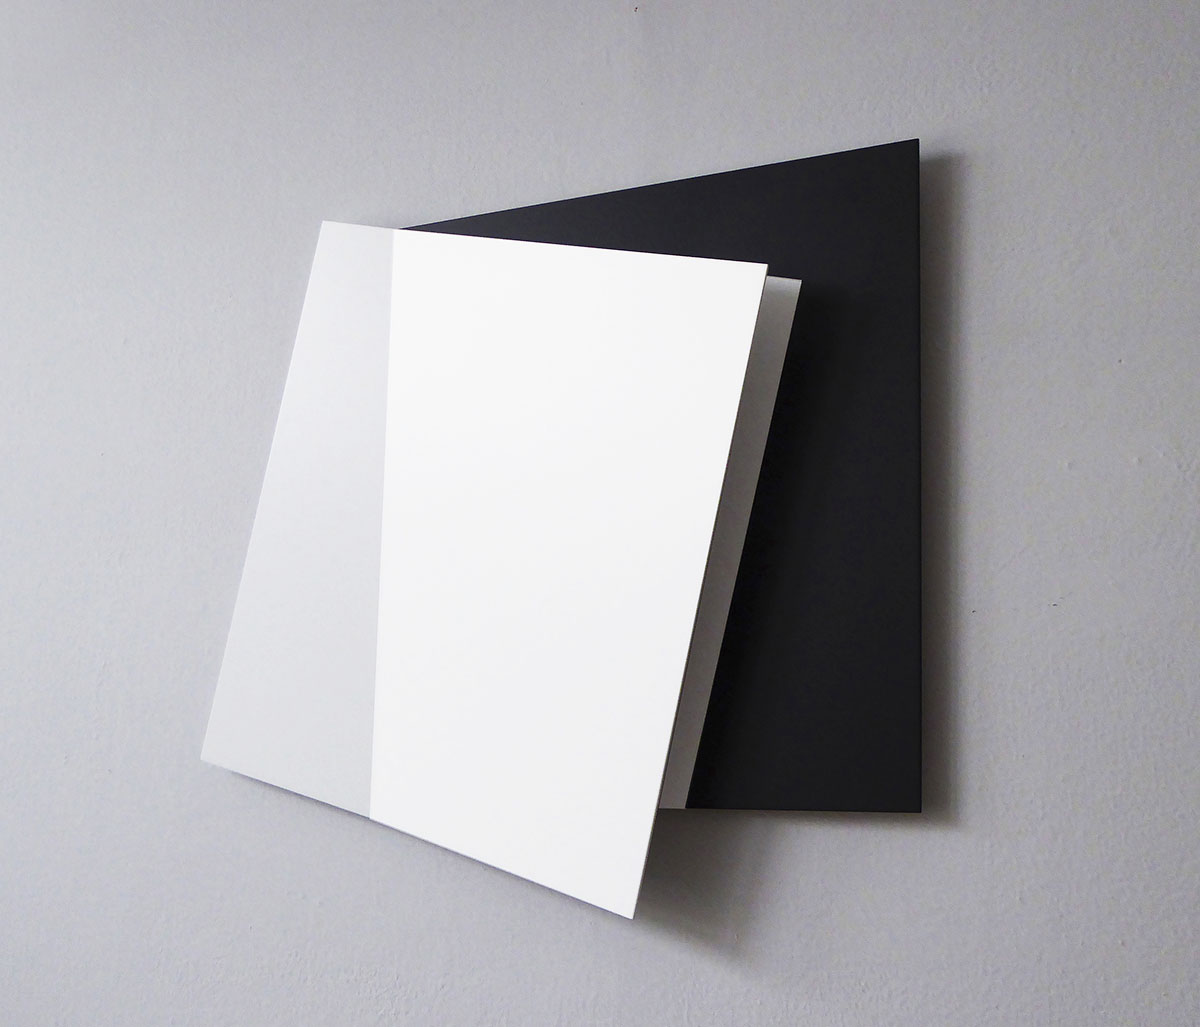 Weiß-Schwarz-Weißraum I, 201658,5 x 70 x 5 cmAluminium, Acryllack